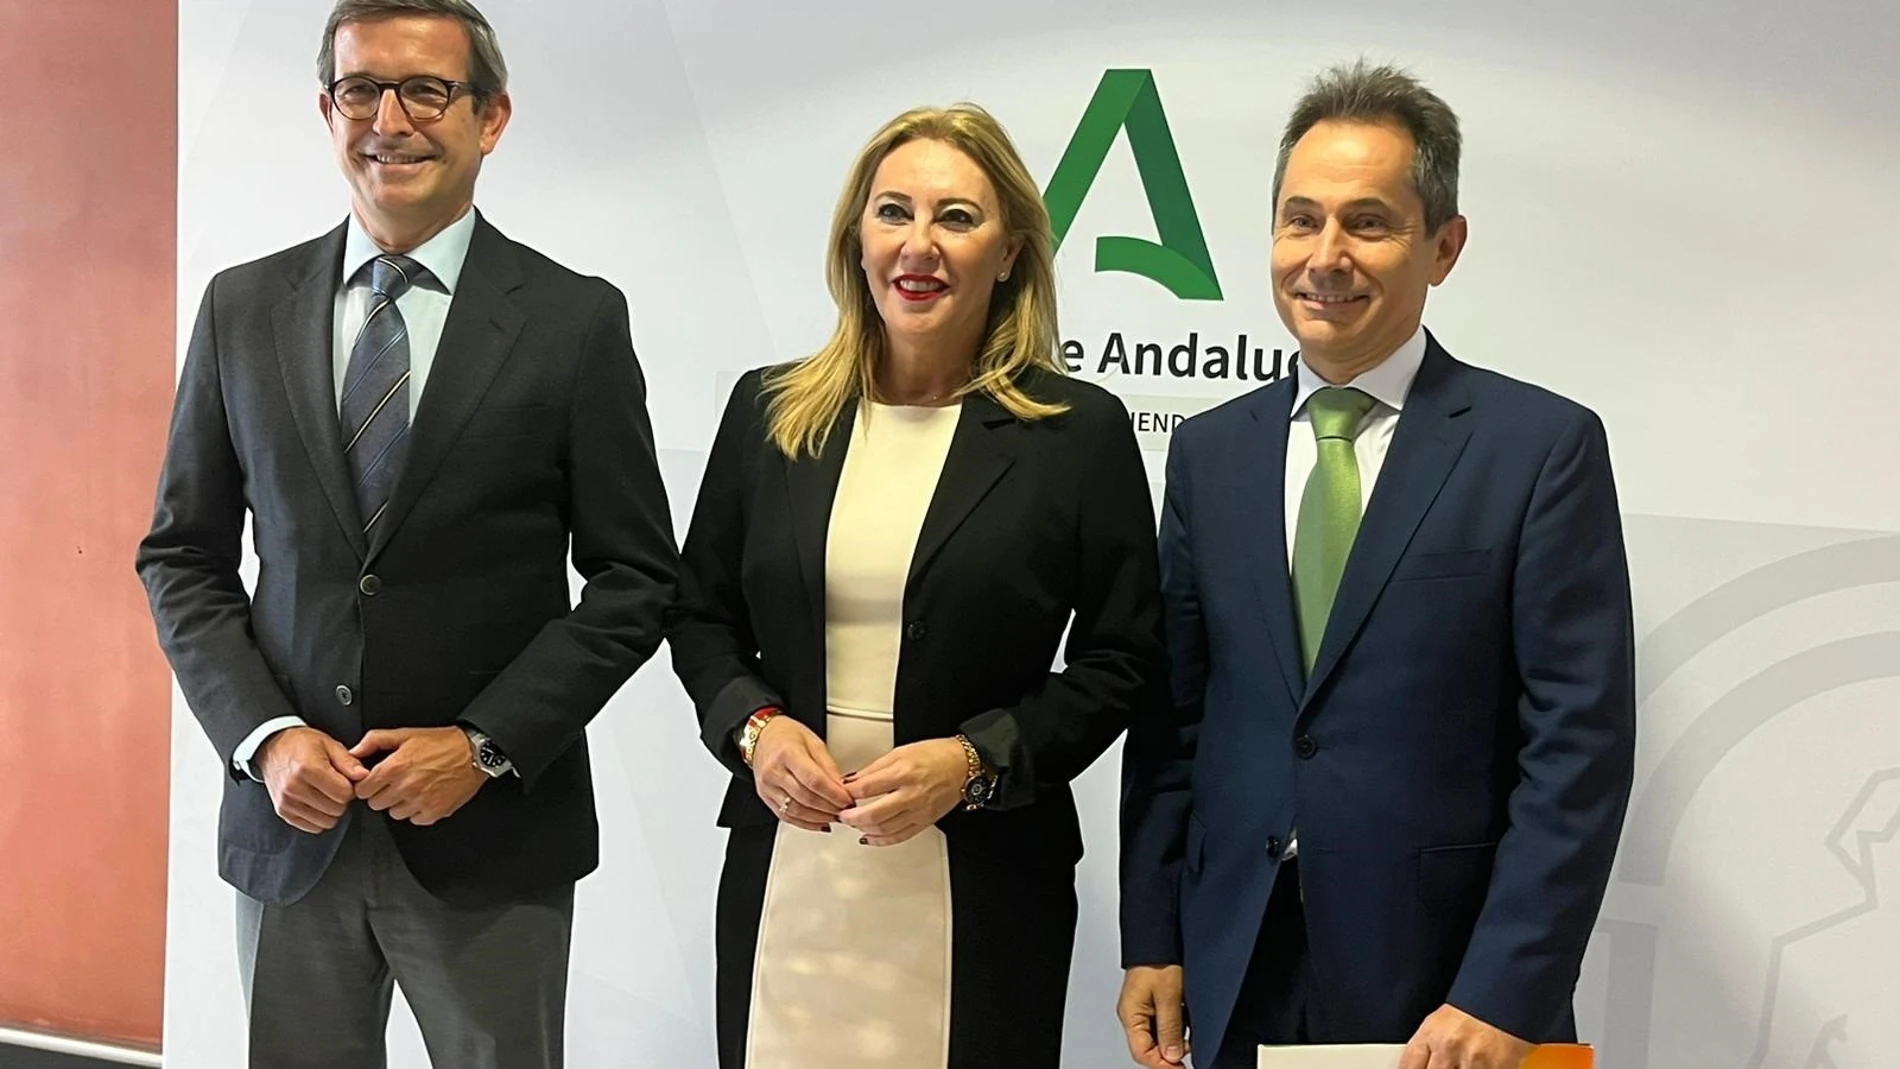 Economía.- Iberdrola y la Junta de Andalucía firman contrato de 882 millones para suministro de energía 100% renovable